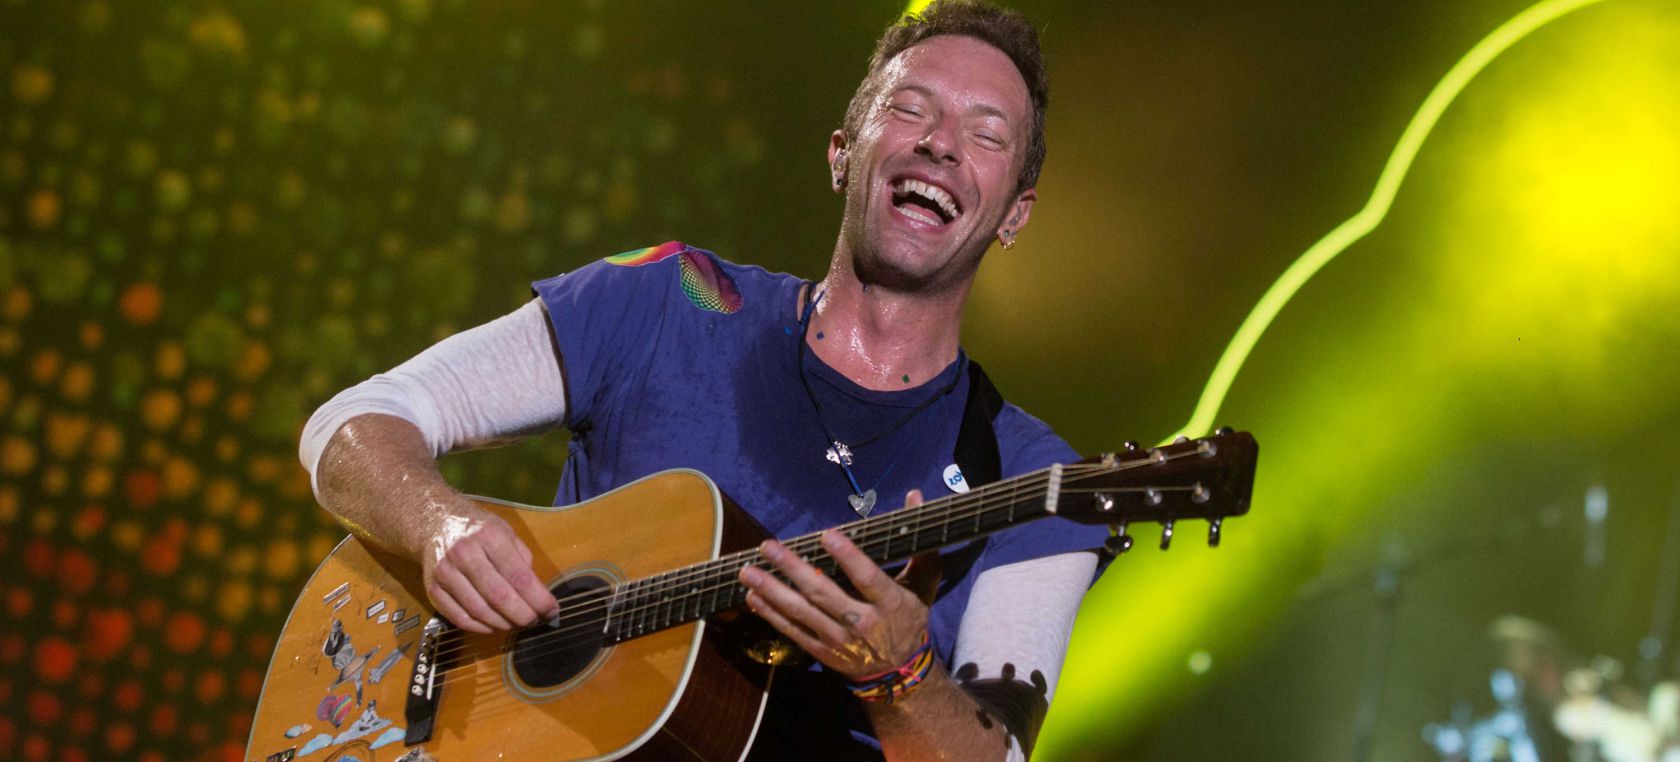 ‘A Head Full of Dreams’ de Coldplay cumple 6 años: lleno de invitados especiales como Beyoncé o Noel Gallagher